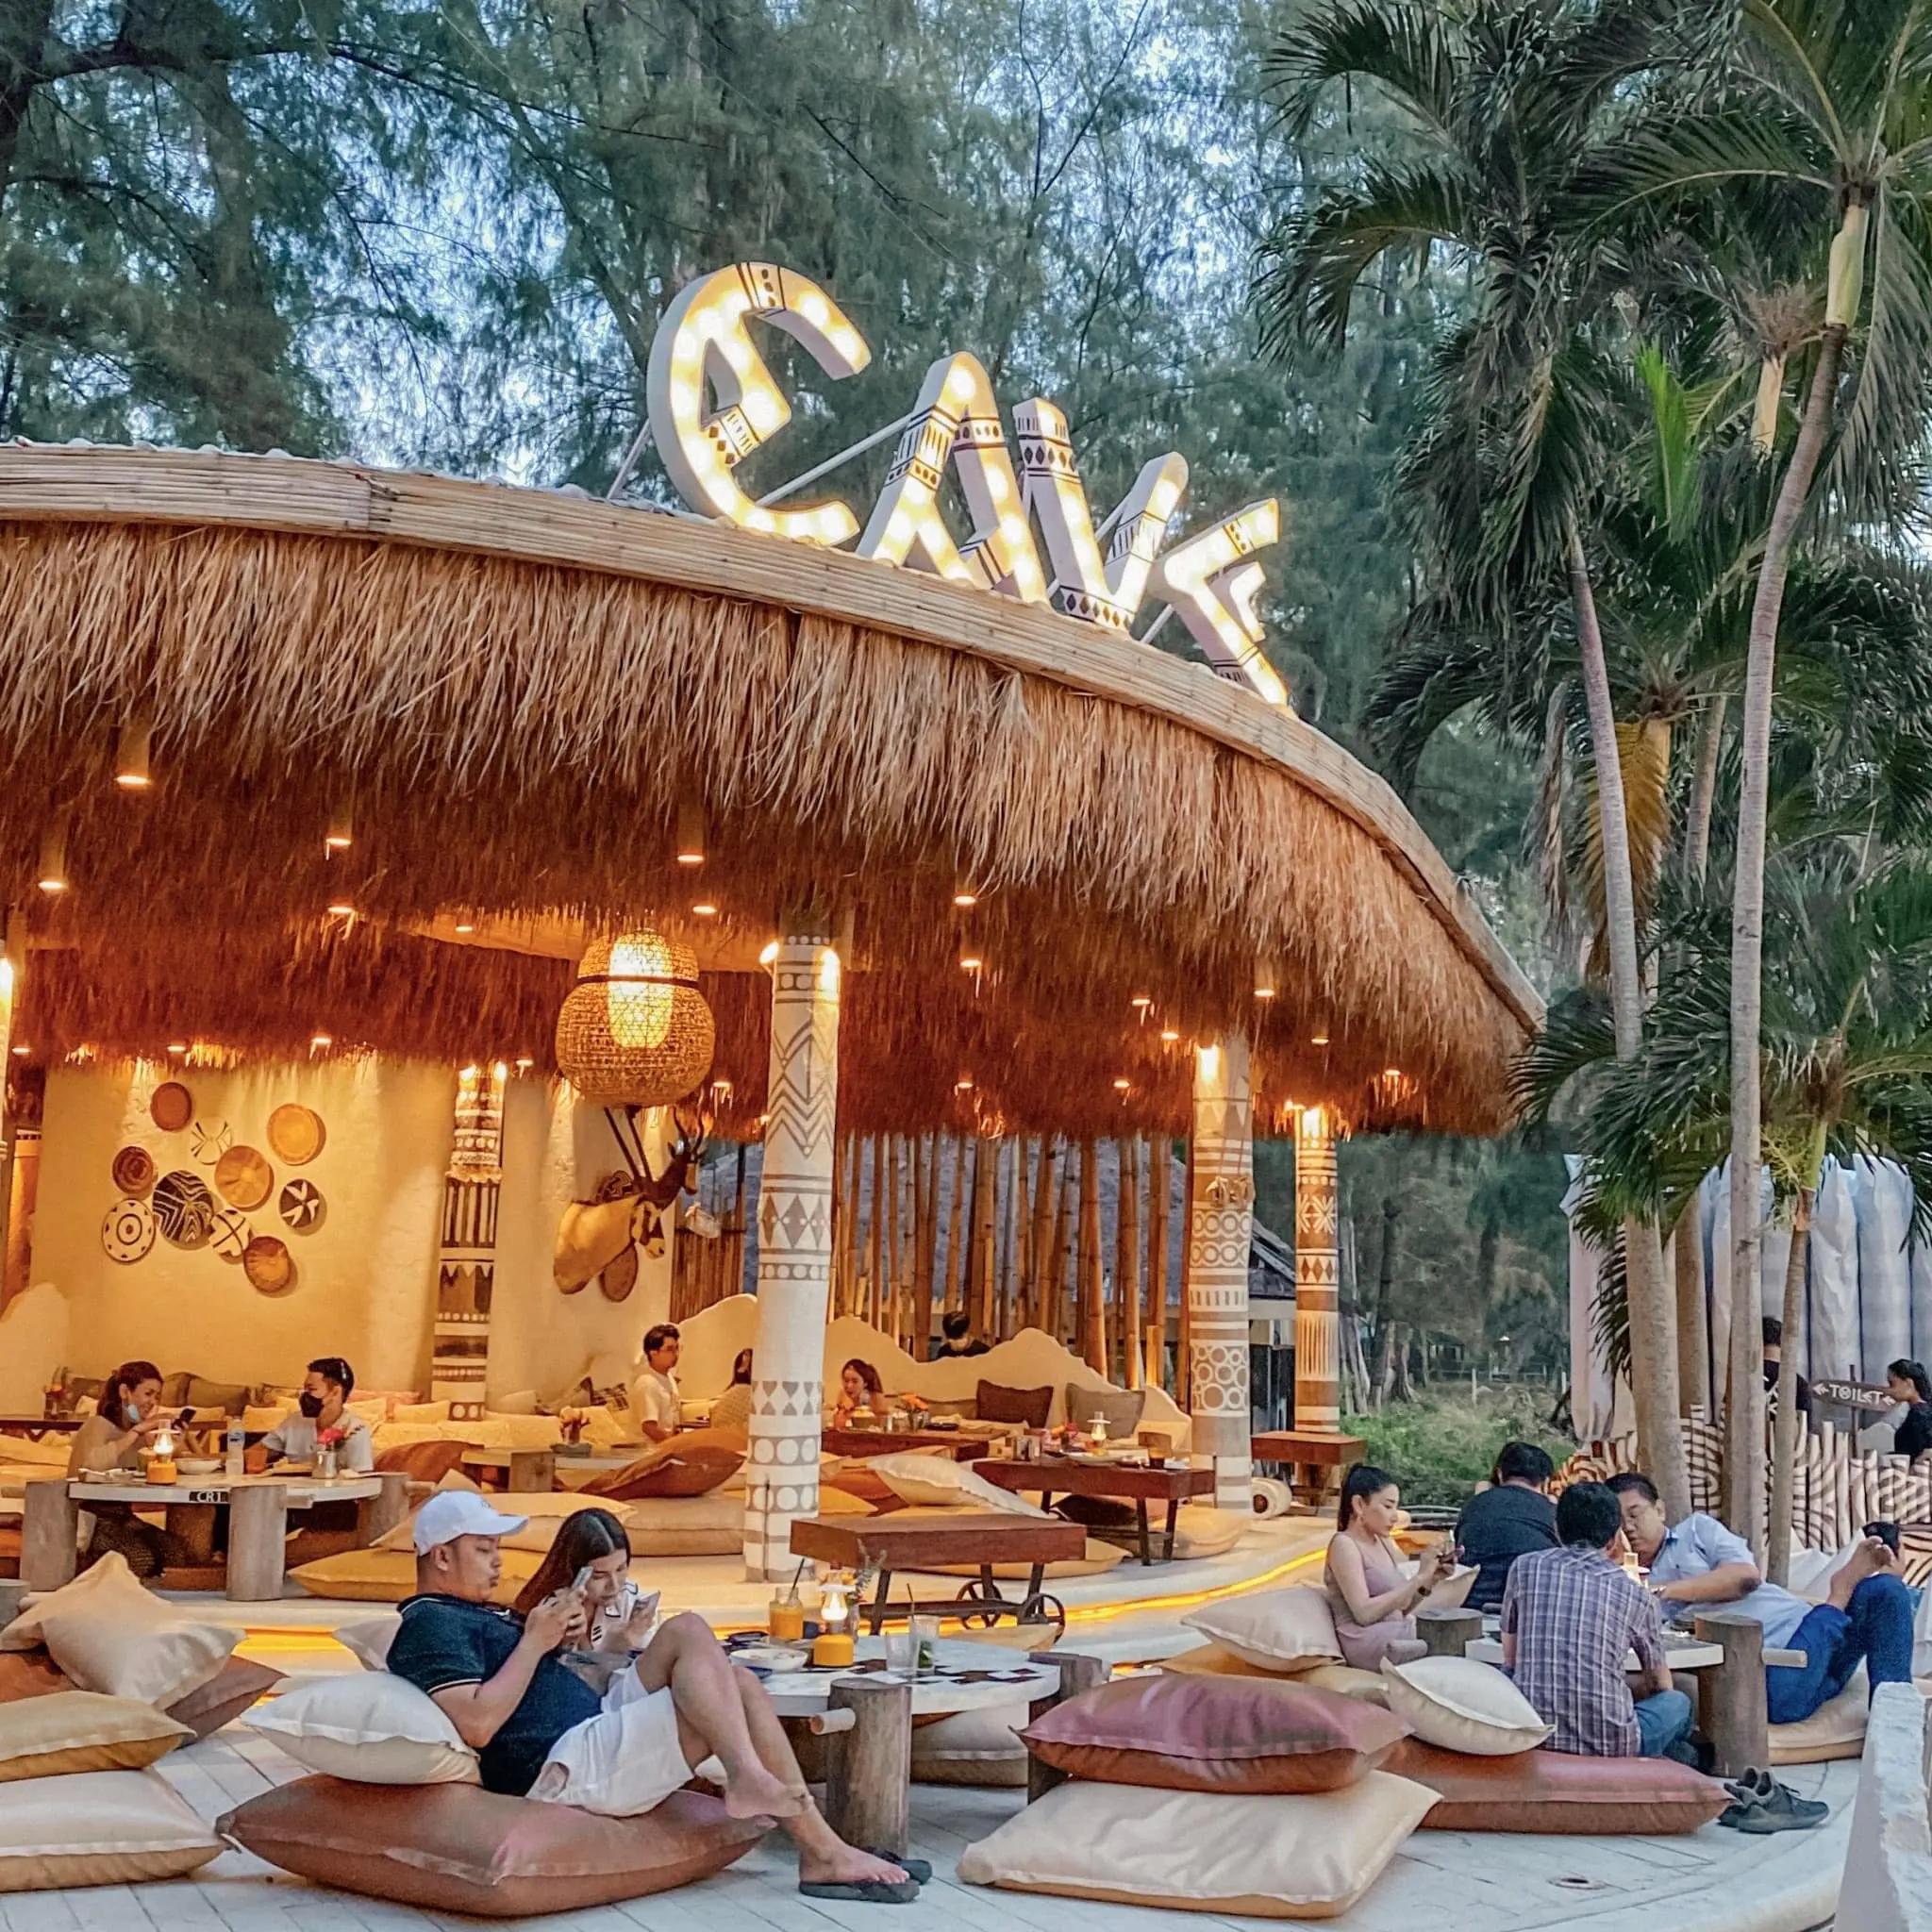  Cave Beach Club Pattaya เคฟ บีช คลับ พัทยา 